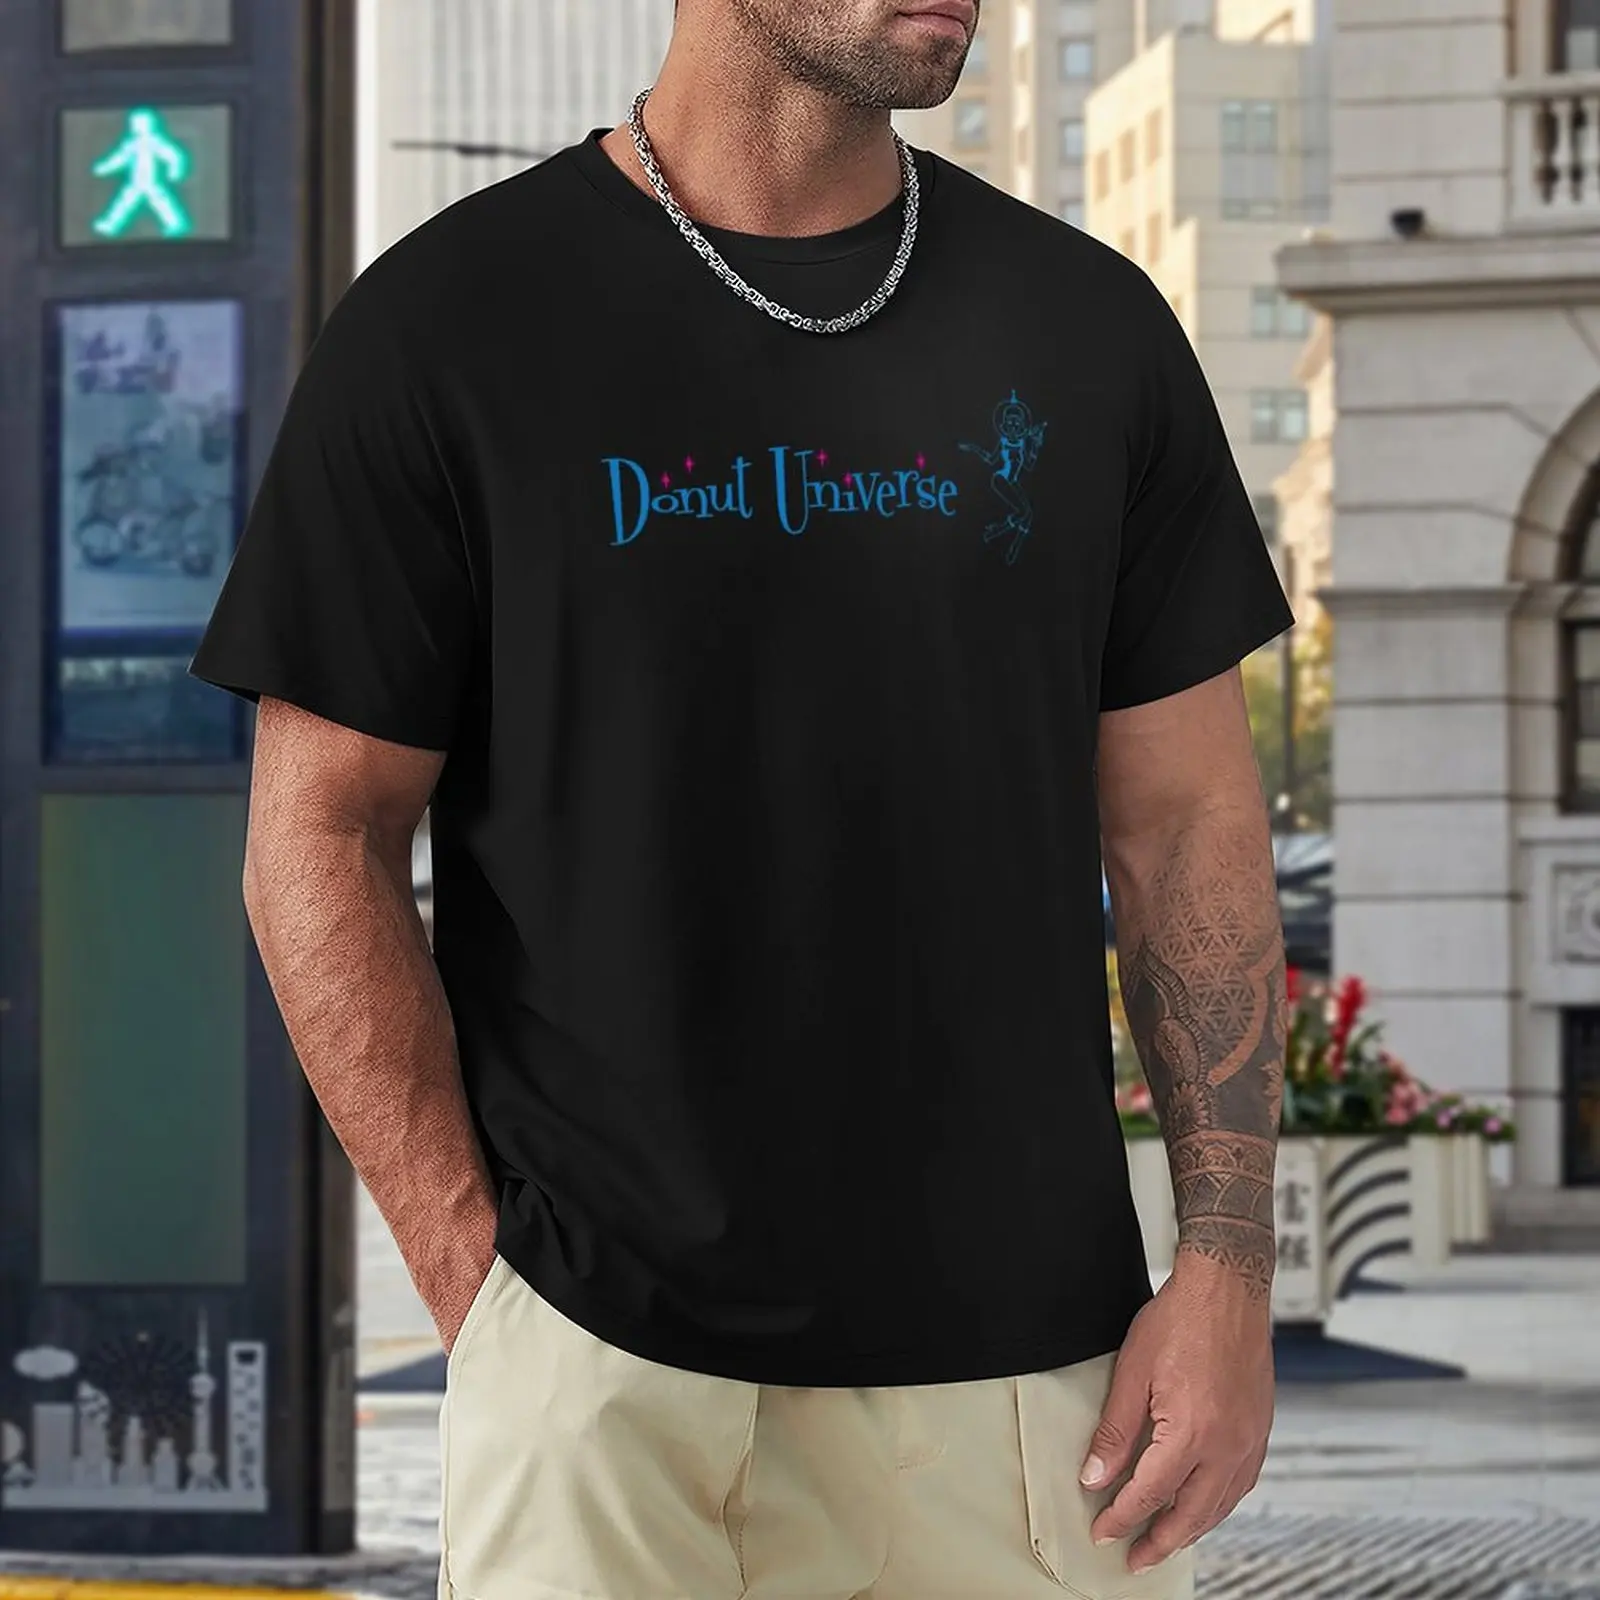 Вселенная пончиков - Горизонтальный логотип - Одежда, футболки, спортивные рубашки, забавные футболки, футболки для тяжеловесов, простые черные футболки для мужчин Изображение 4